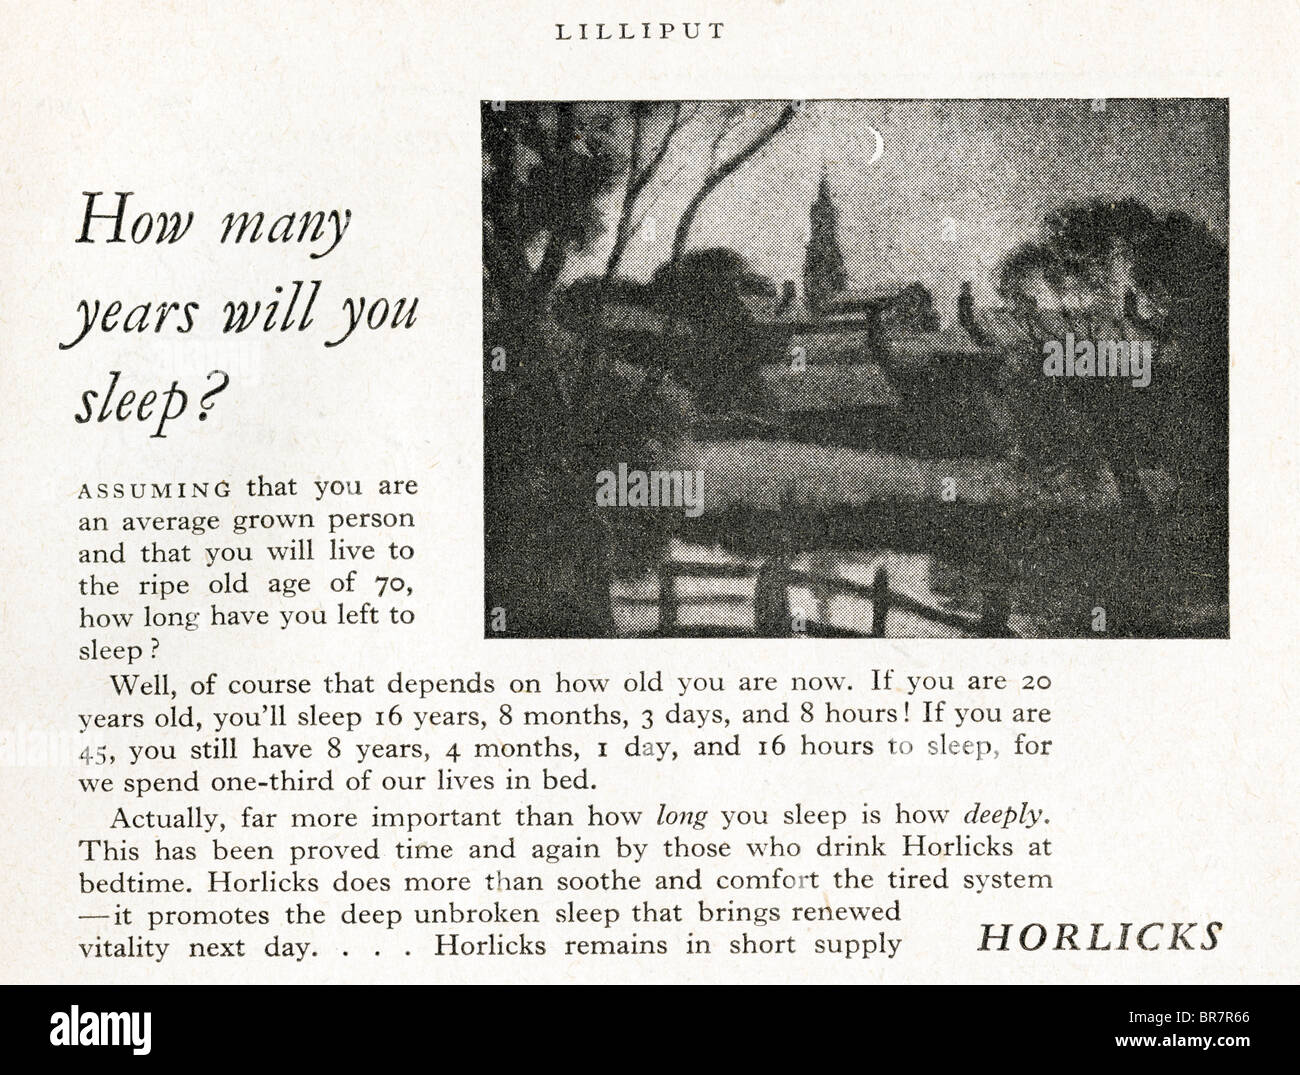 Bianco e Nero Spot per Horlicks bere all'interno della rivista Lilliput datata novembre 1947 Foto Stock